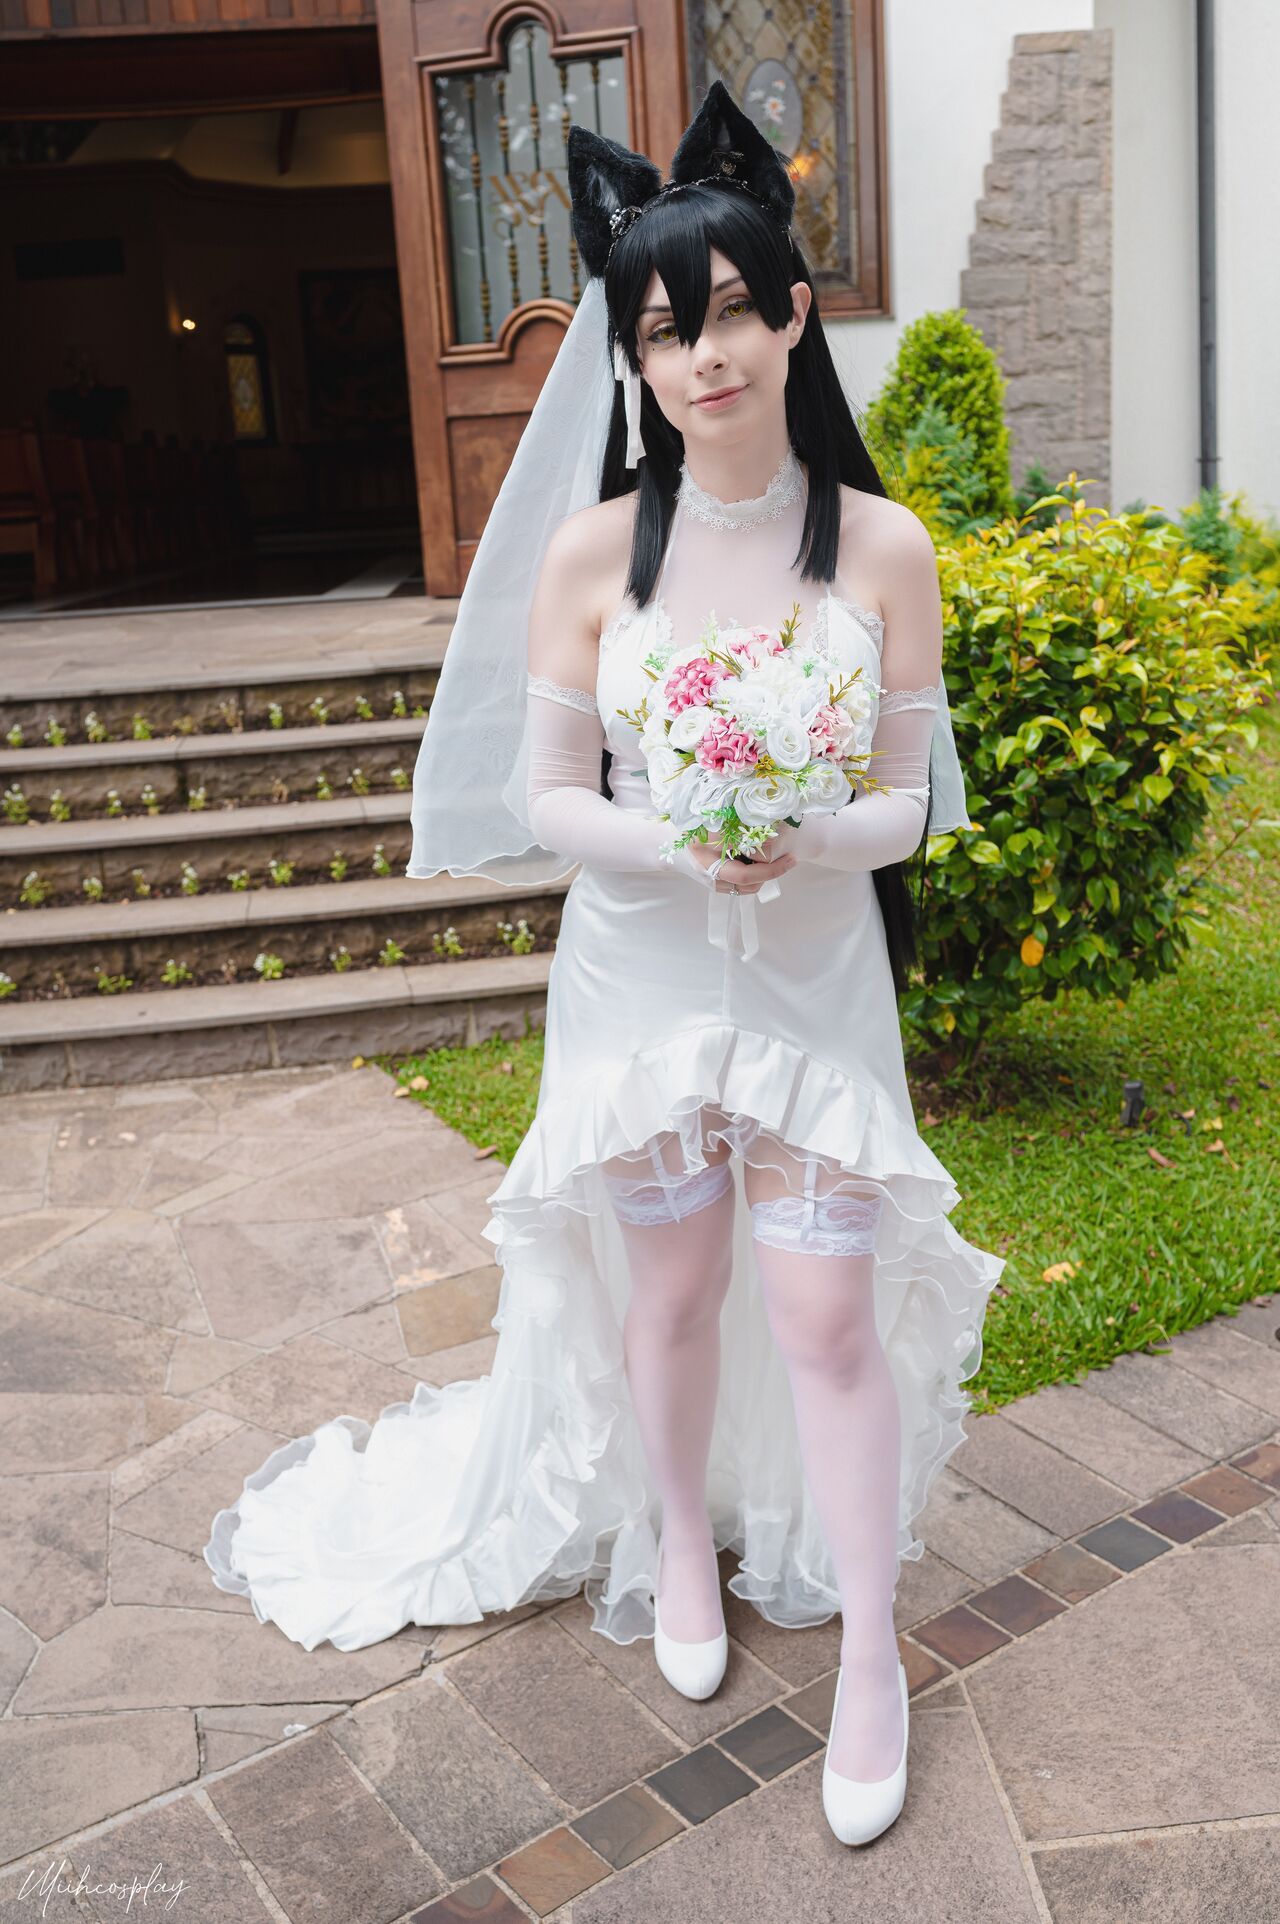 Miih – Atago bride